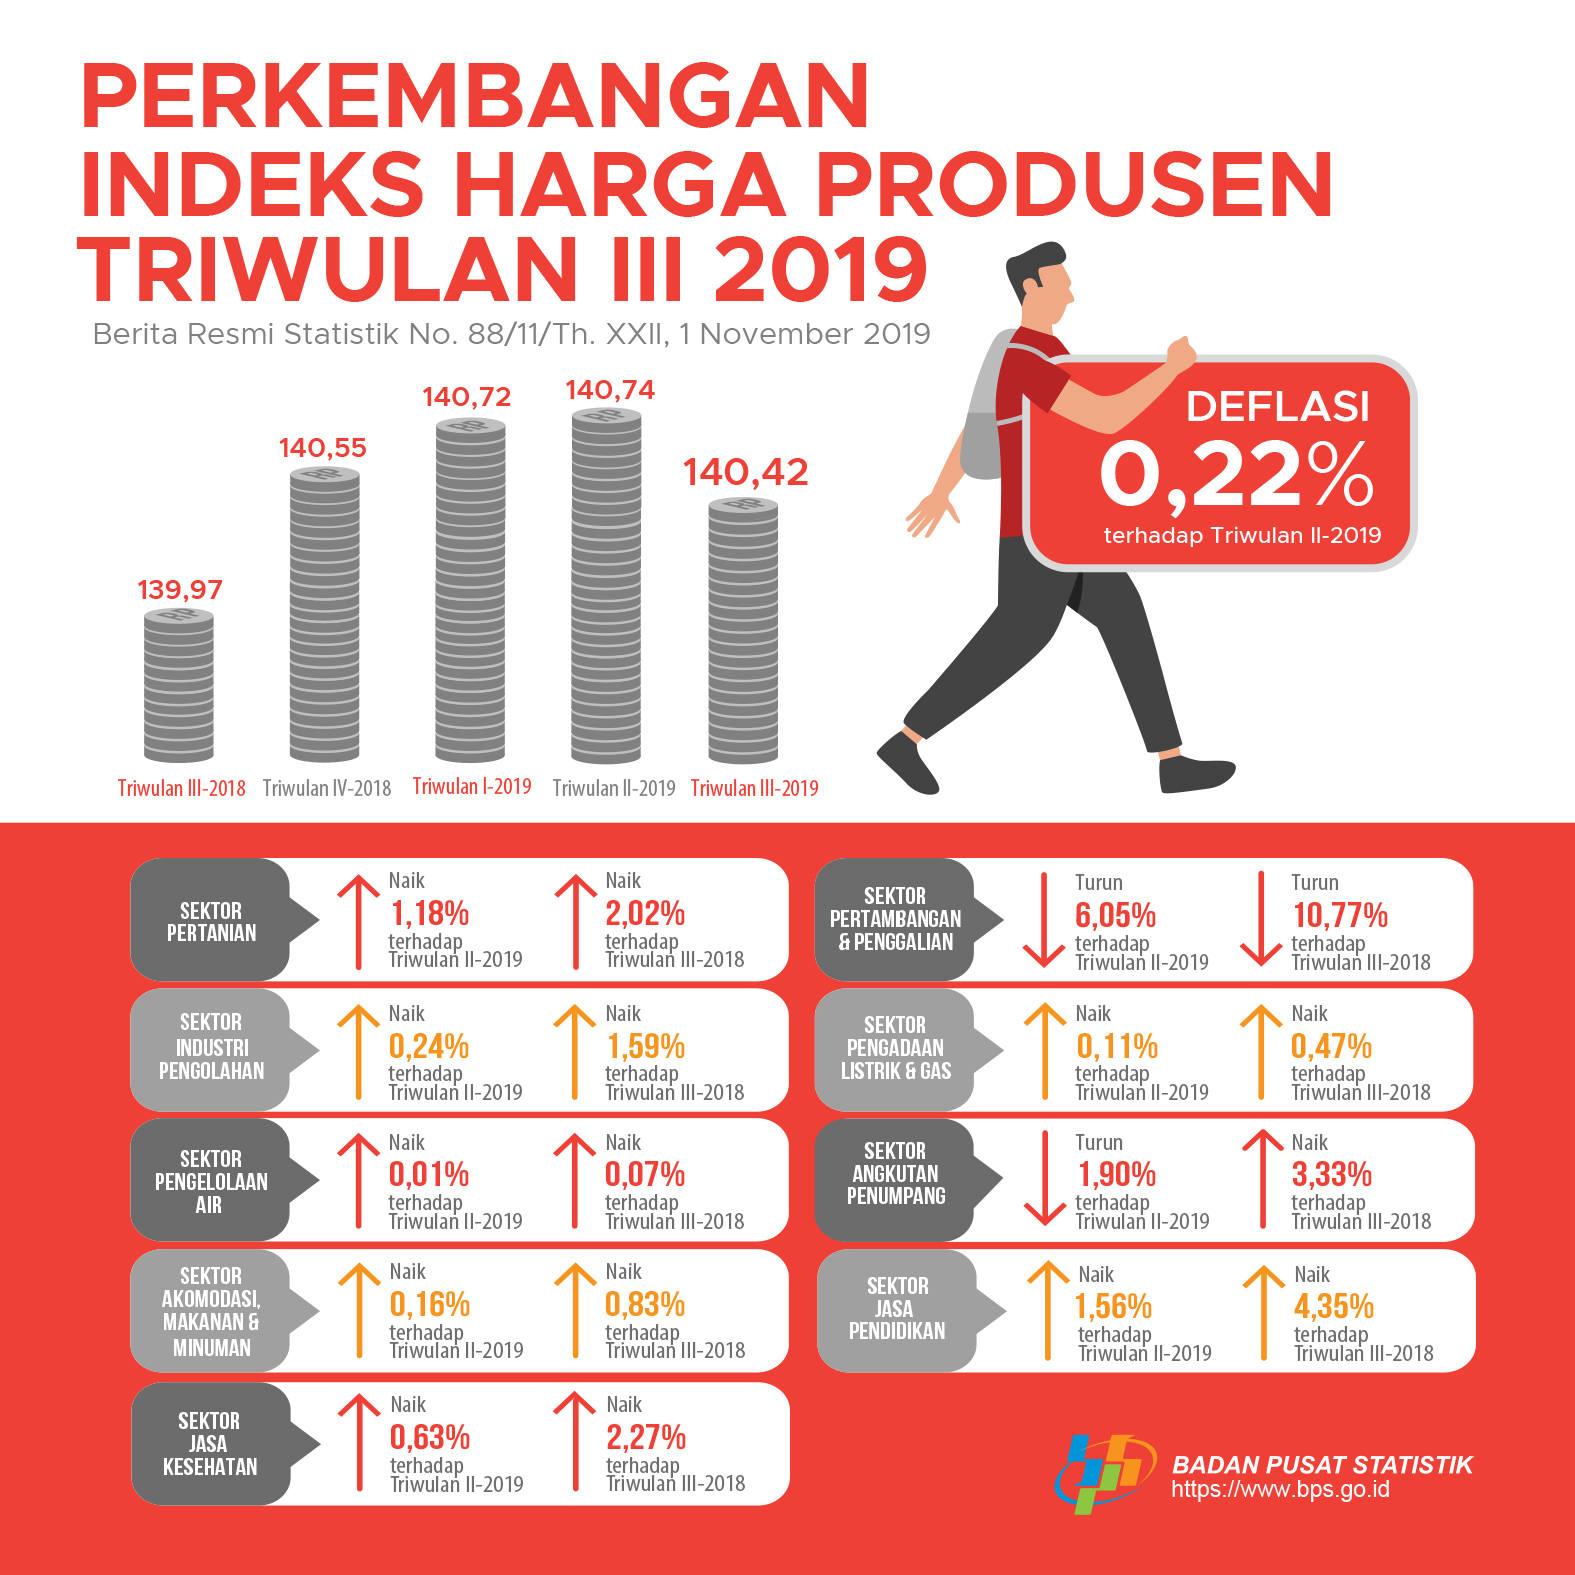 Producer Price Index Quarter III-2019